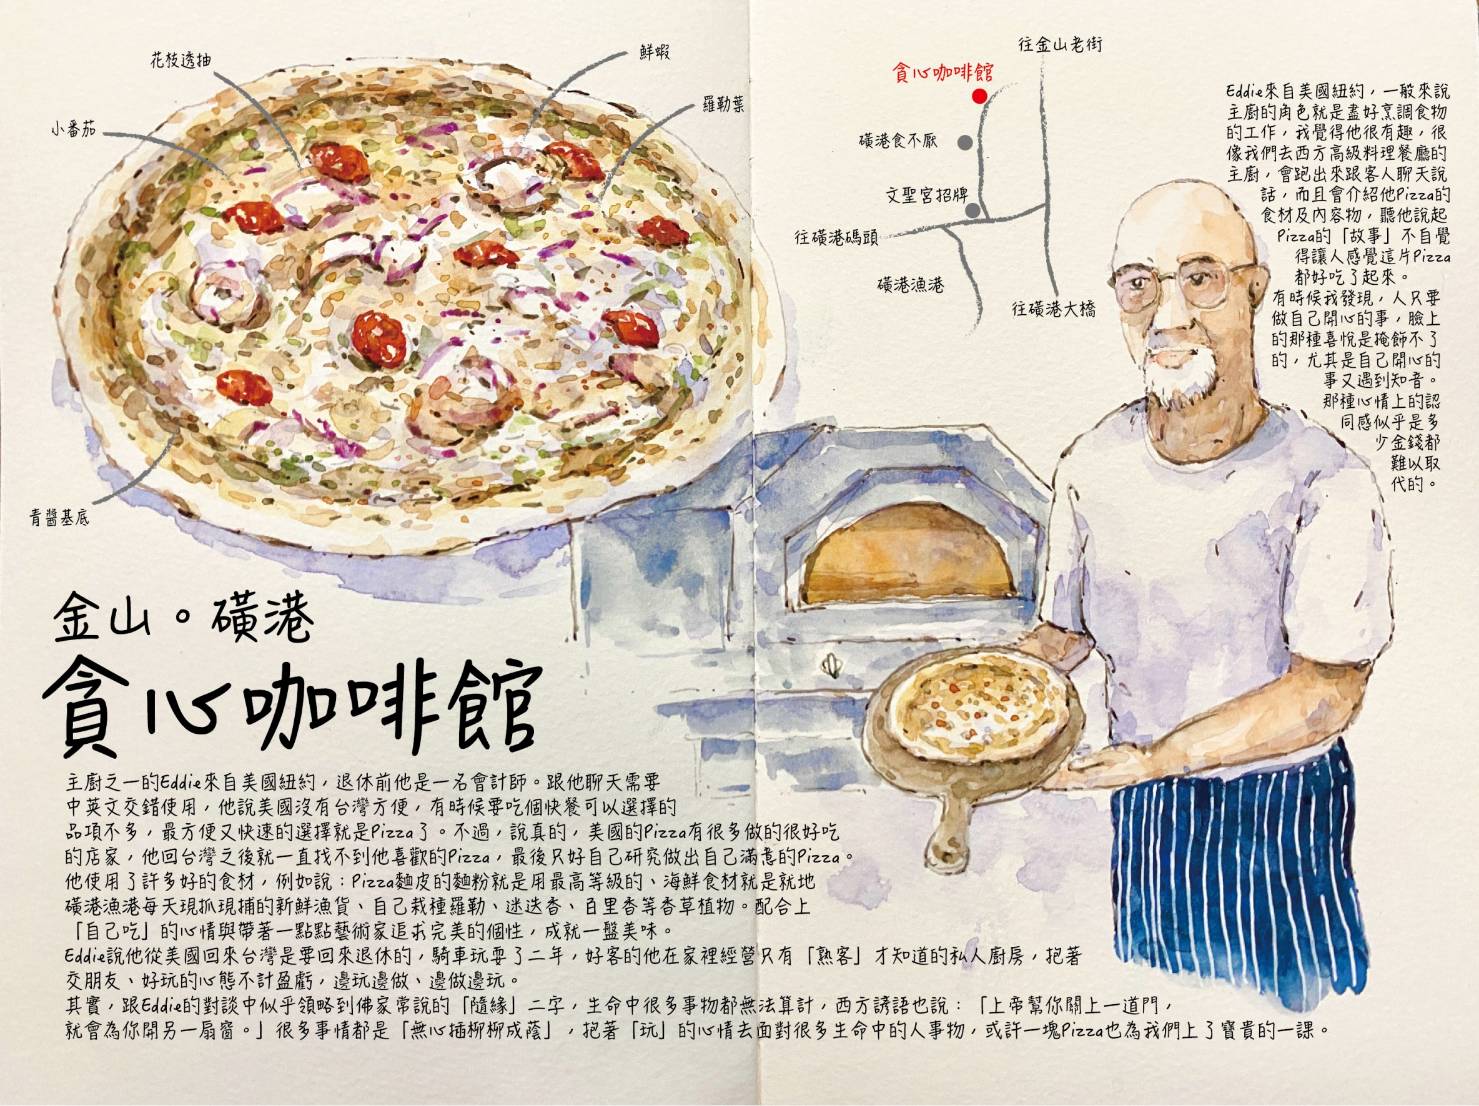 來自美國紐約的Eddie為了吃合口味的披薩  利用磺港漁港現撈的透抽、鮮蝦和自己栽種的羅勒、迷迭香等  烘烤出特色披薩